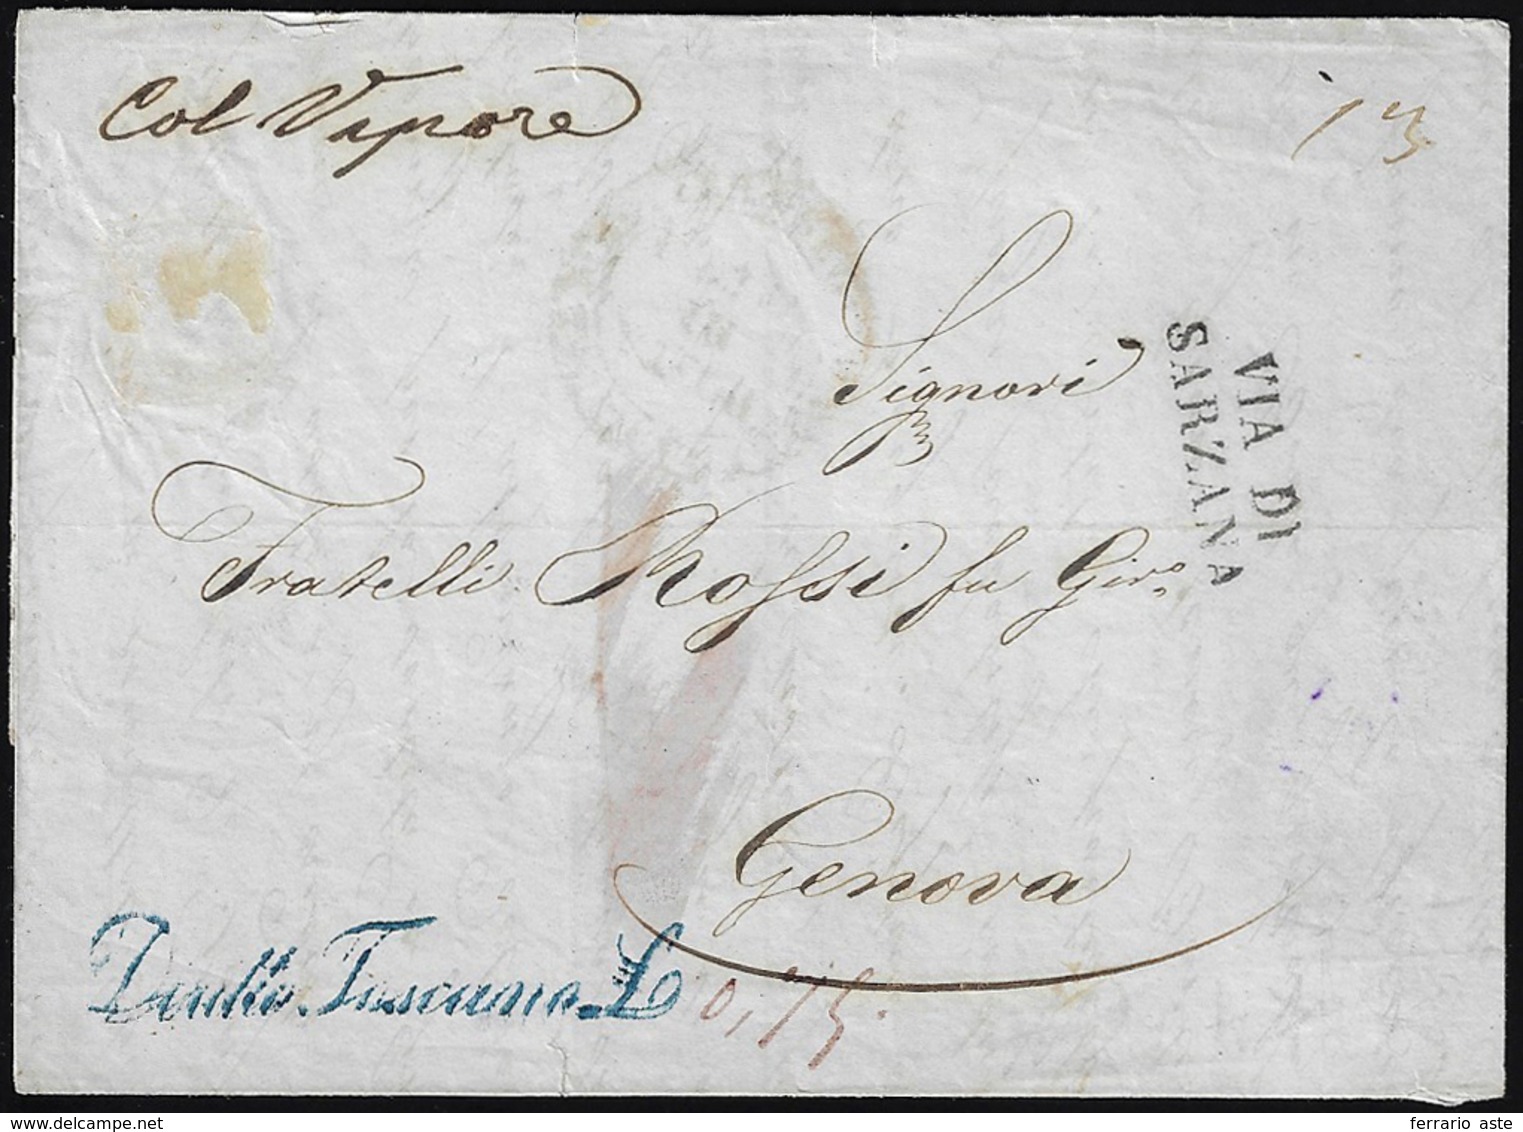 1857 - Lettera Prefilatelica Da Napoli 15/9/1857 A Genova, Per La "Via Di Sarzana". Sul Fronte Il Li... - Tuscany